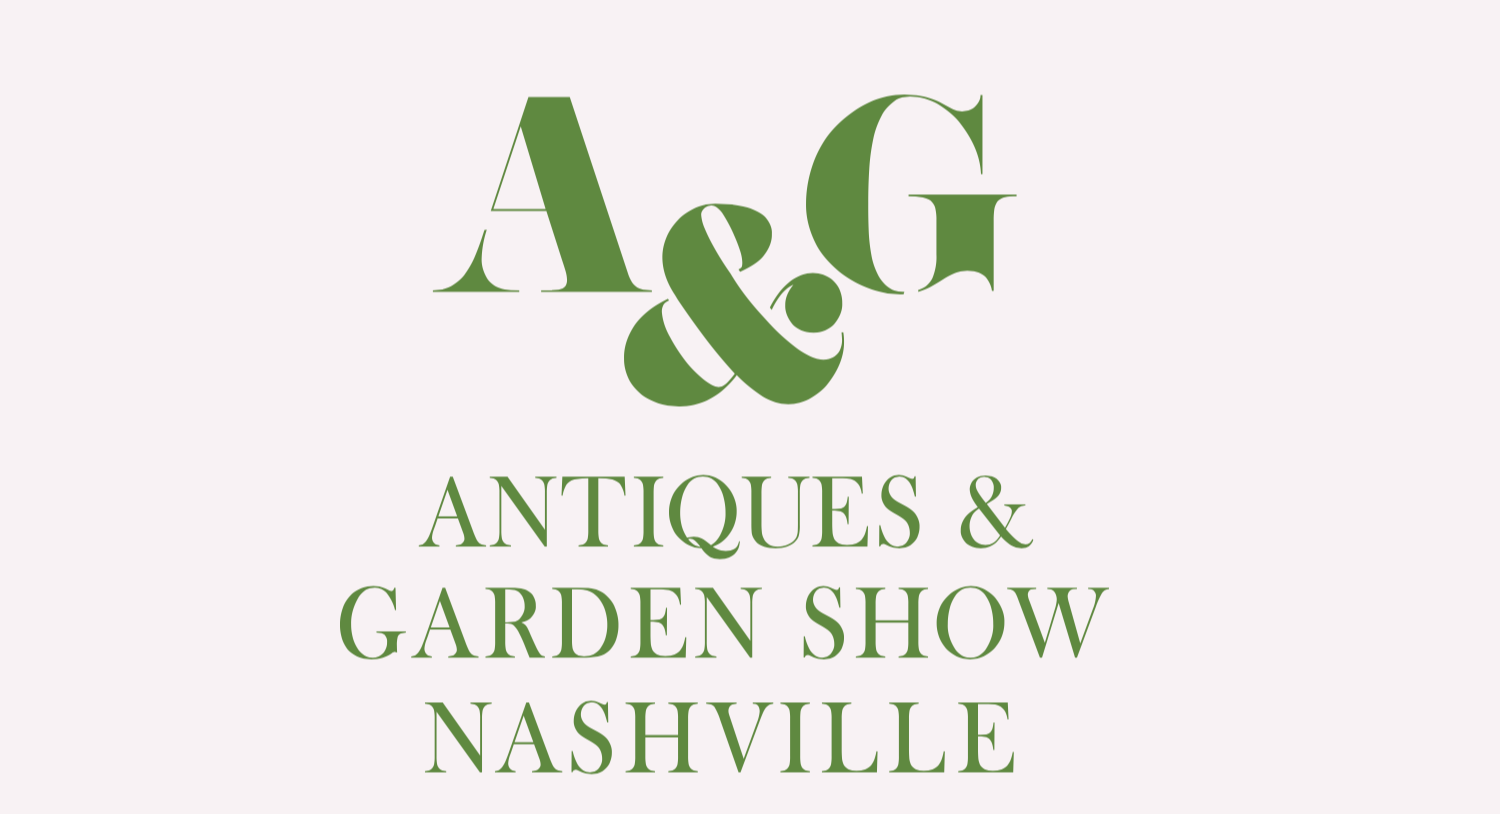 Antiques & Garden Show Nashville